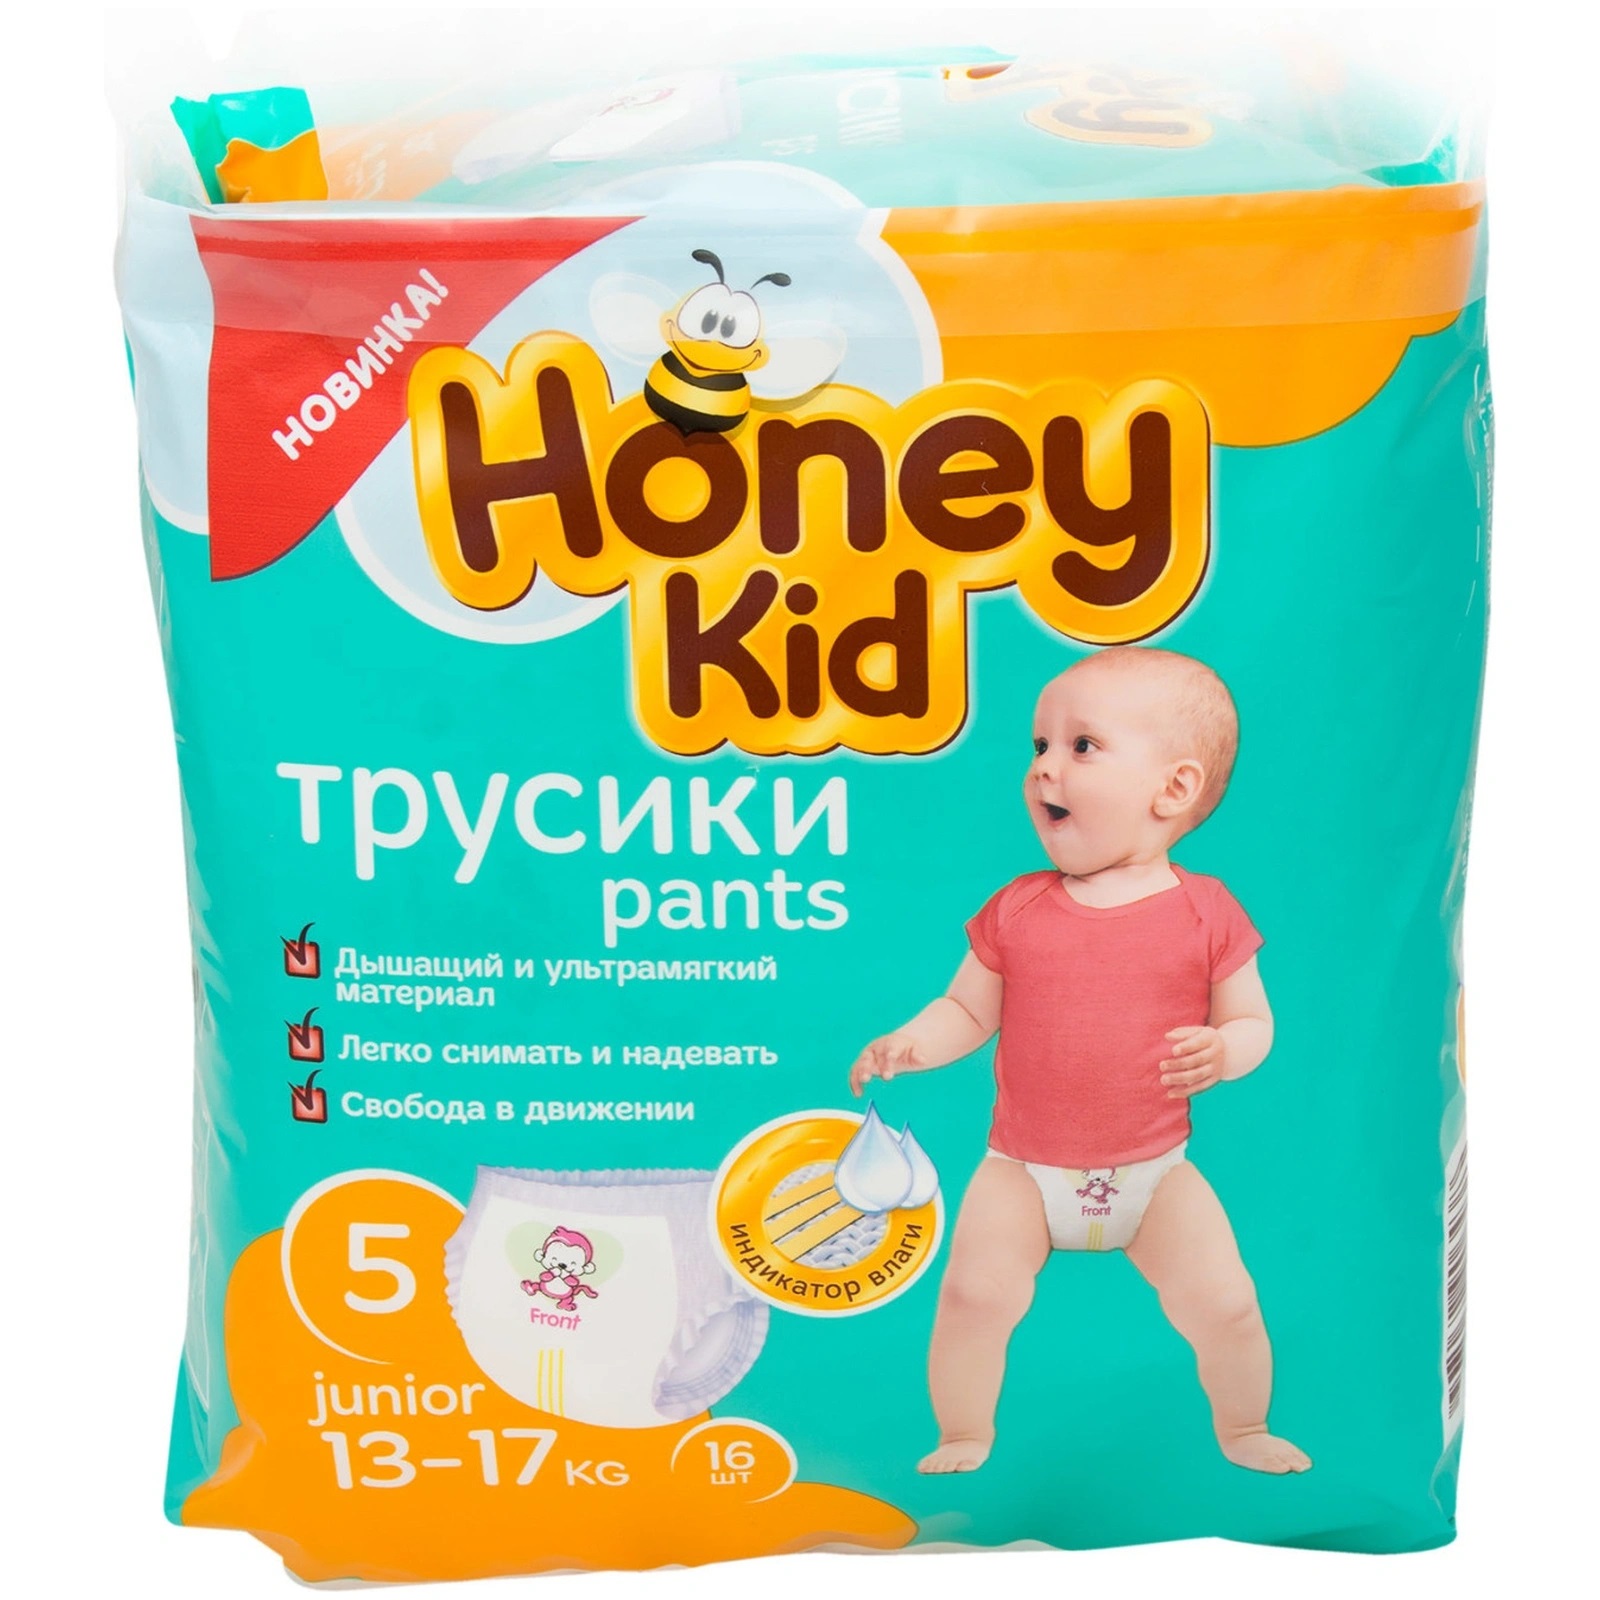 Подгузники-трусики Honey Kid Junior 5 (13-17 кг) 16 шт подгузники трусики little times ночные junior 15 25 кг 16 шт